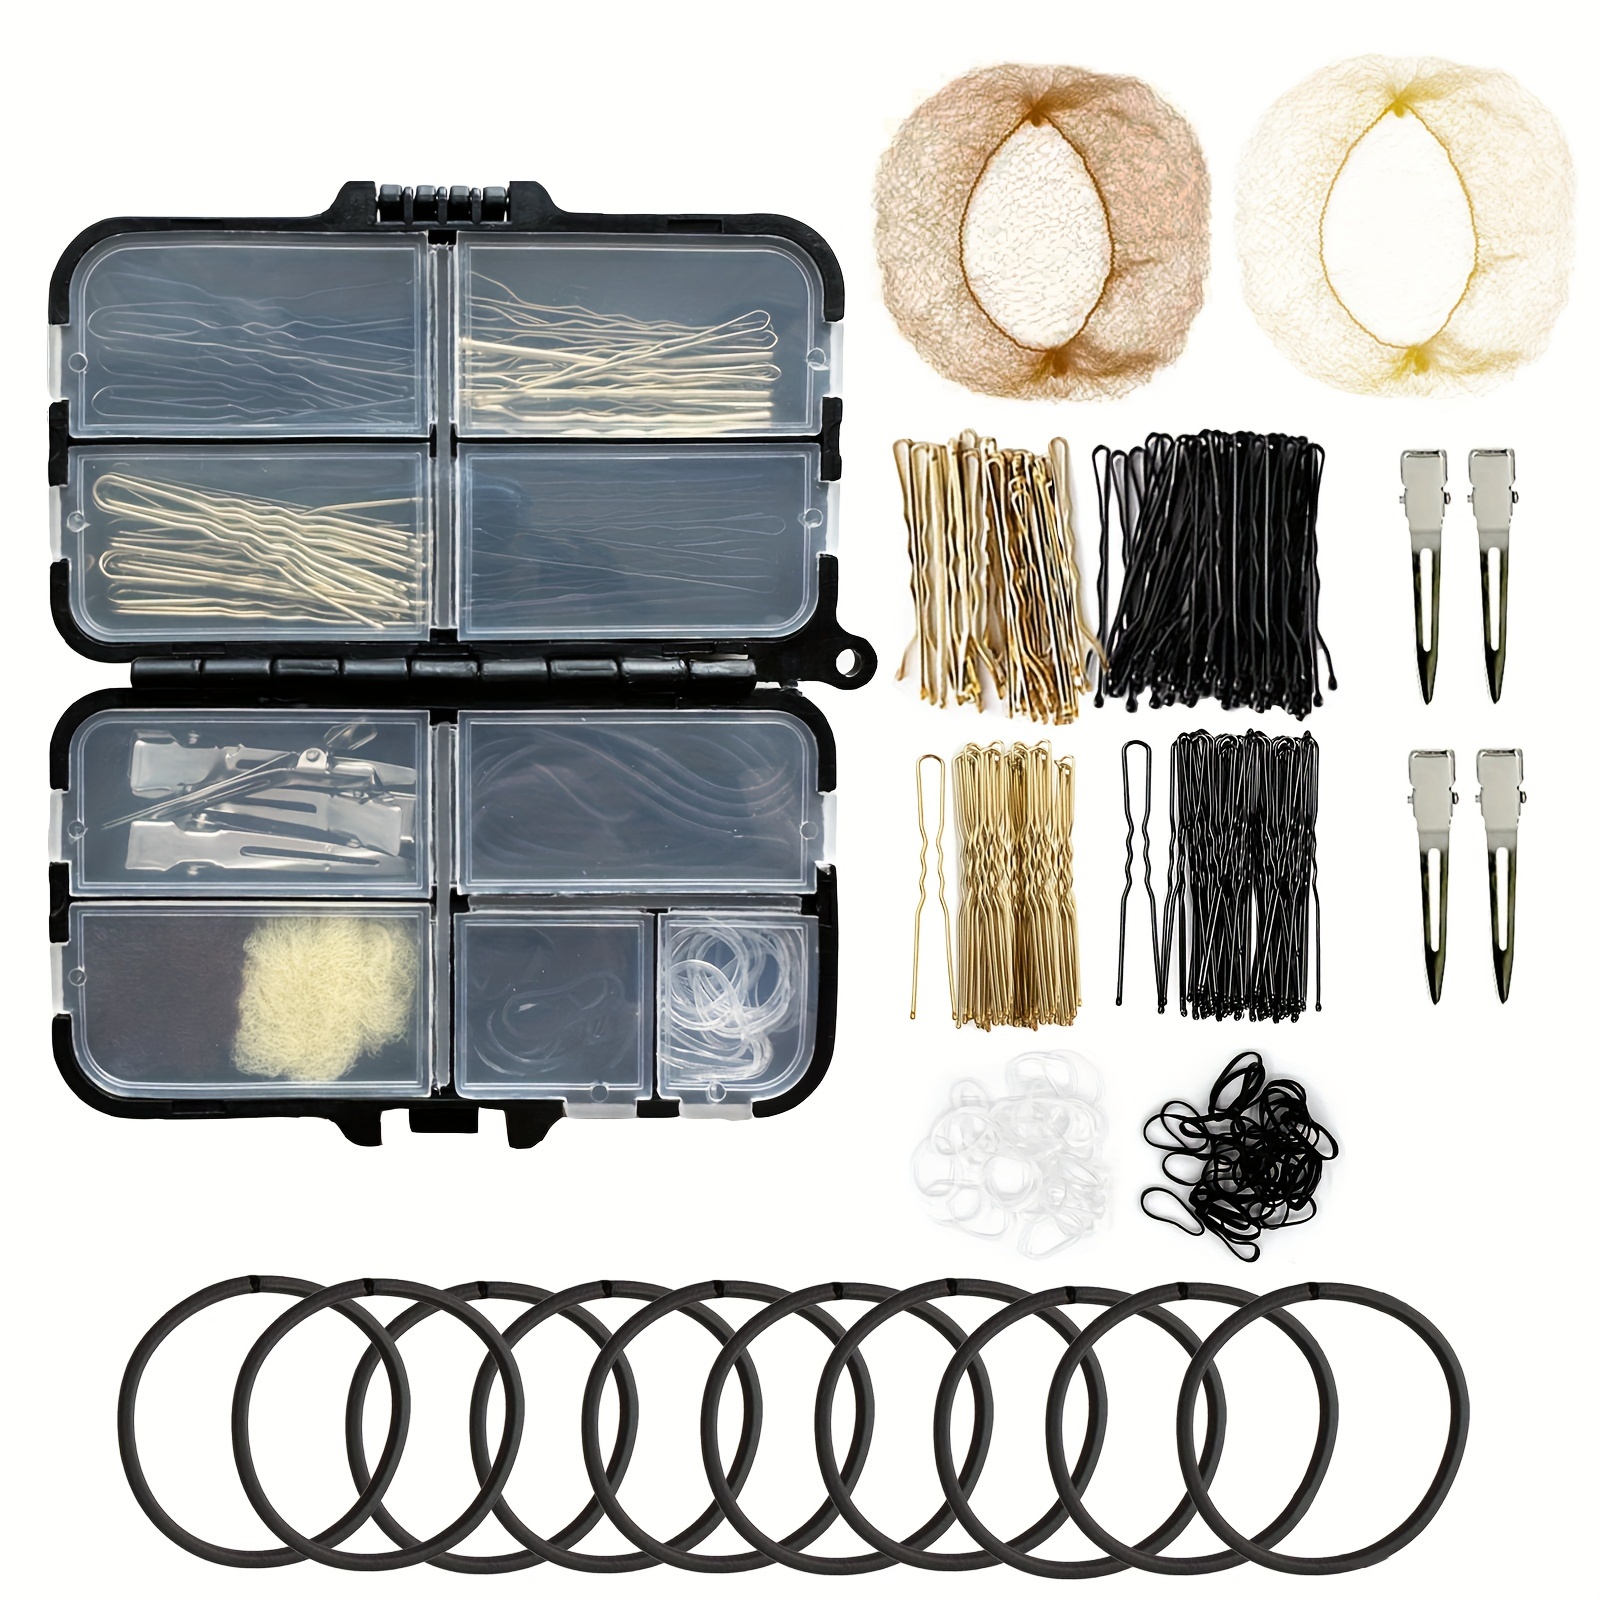 Hair Accessory Kits - Hair Accessories Storage Box